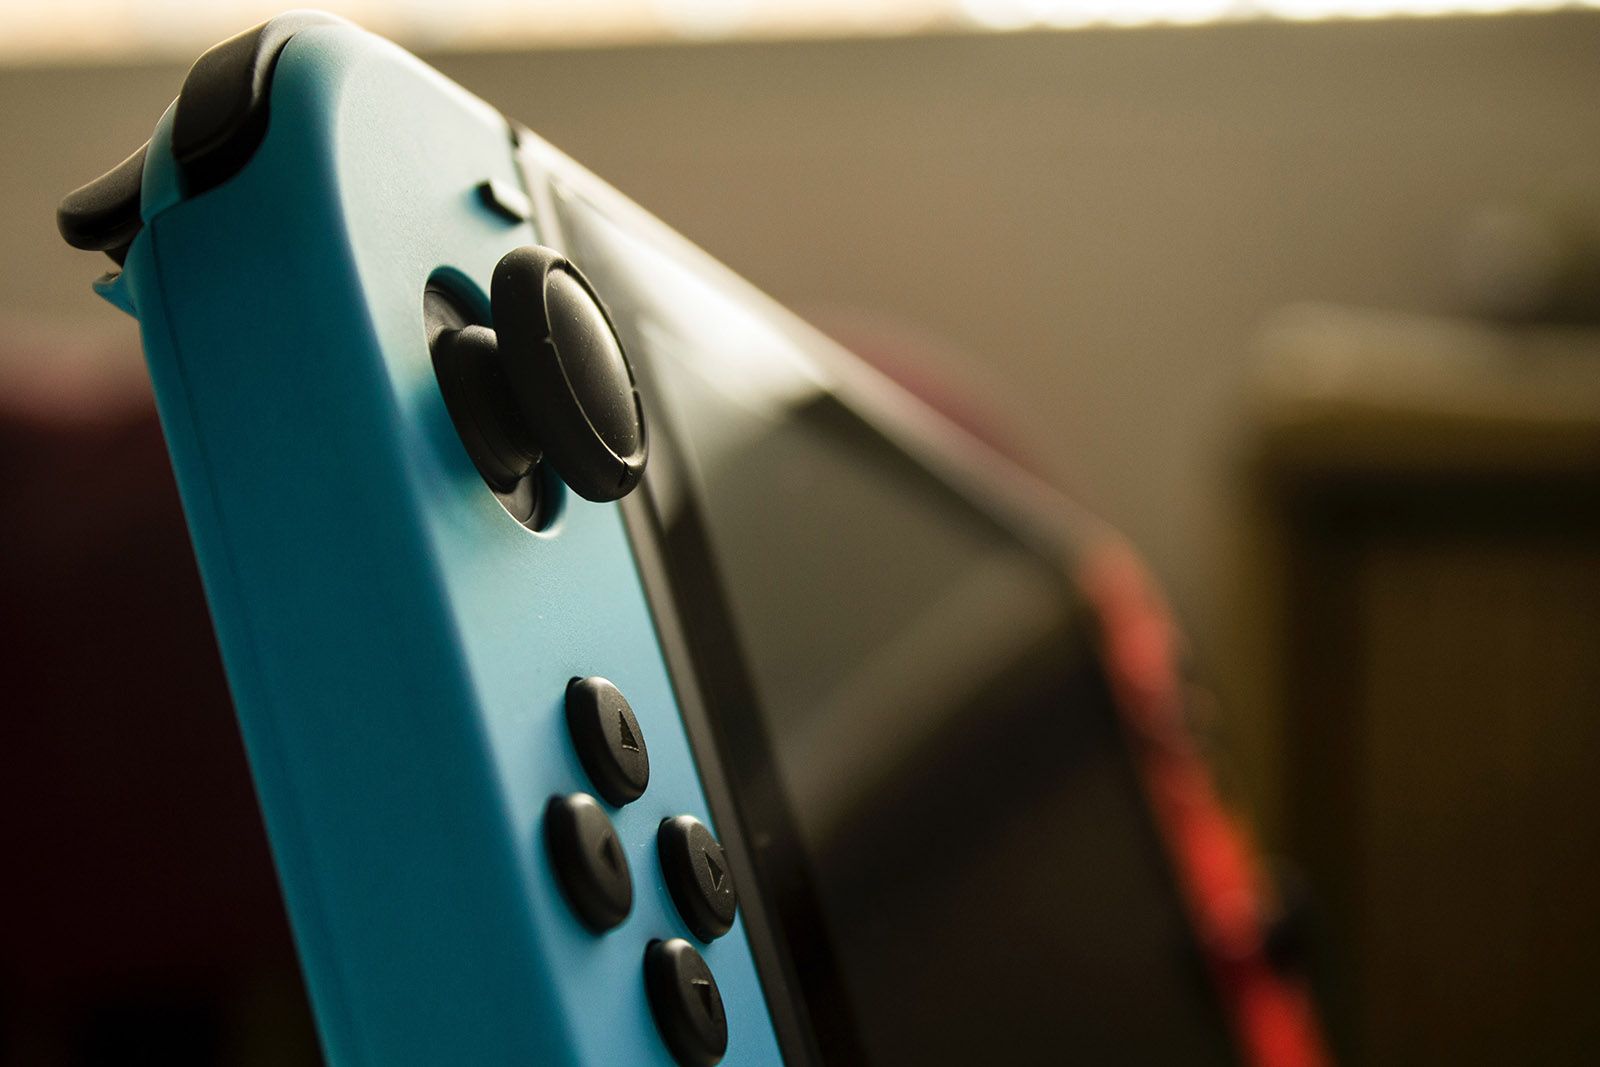 Nueva Nintendo Switch 2: fecha de lanzamiento, especificaciones, precio,  últimas noticias y rumores